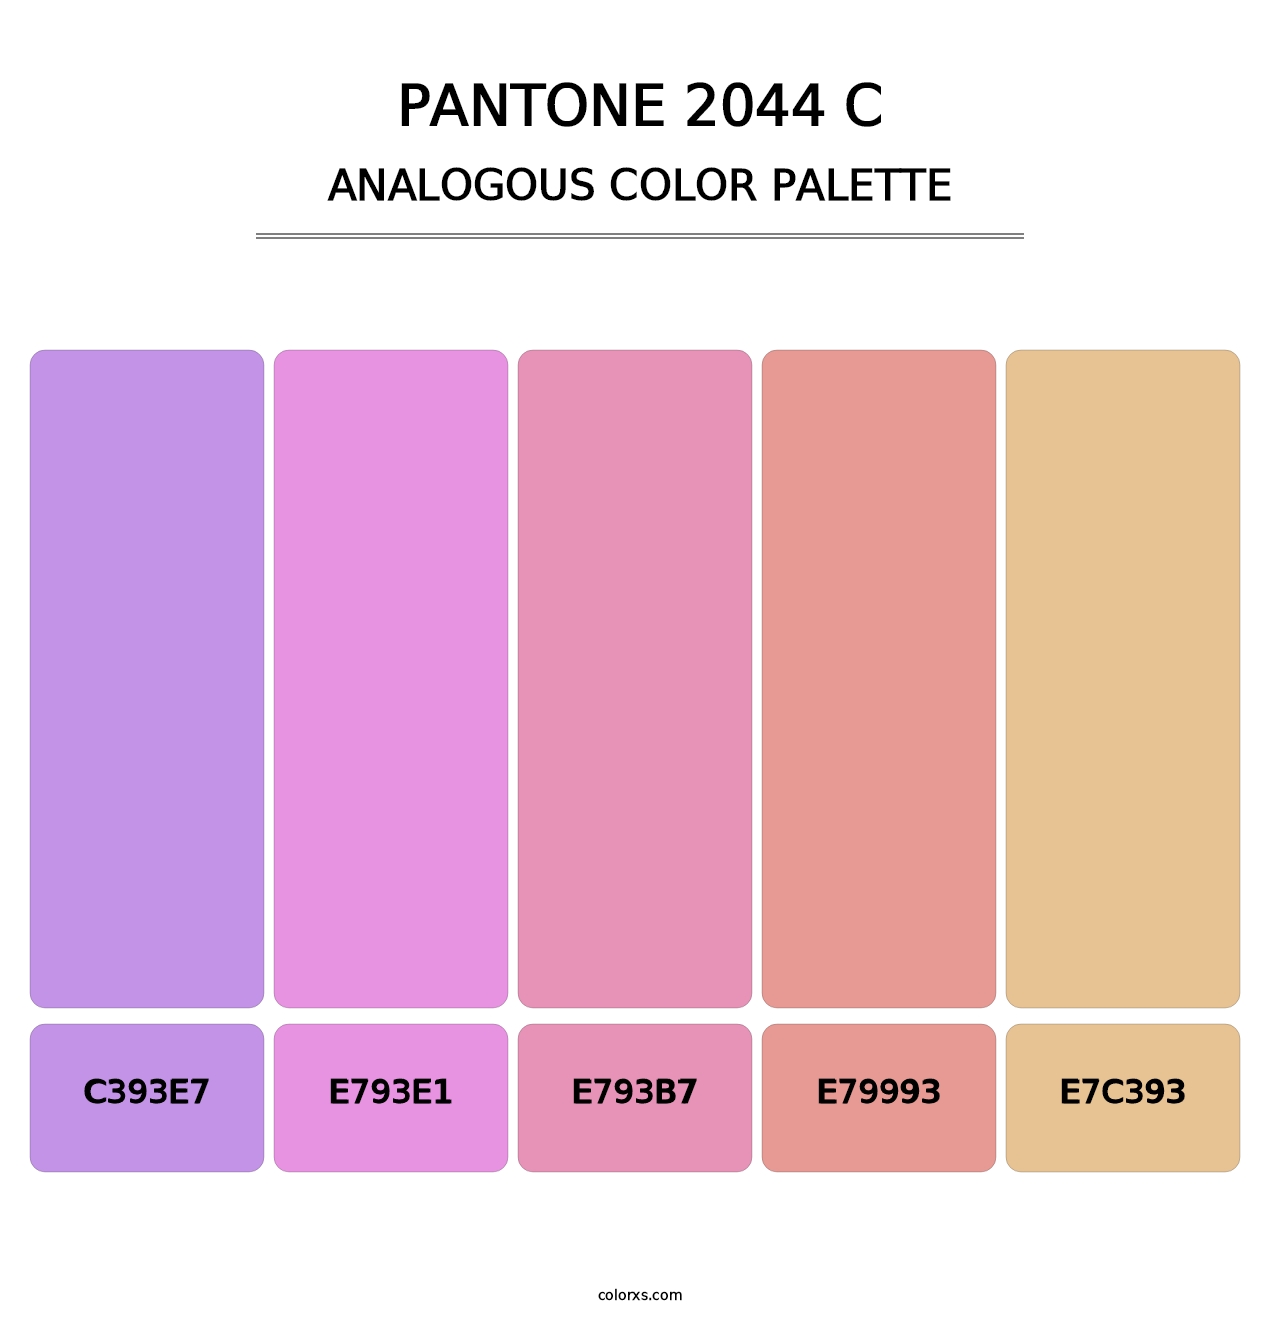 PANTONE 2044 C - Analogous Color Palette